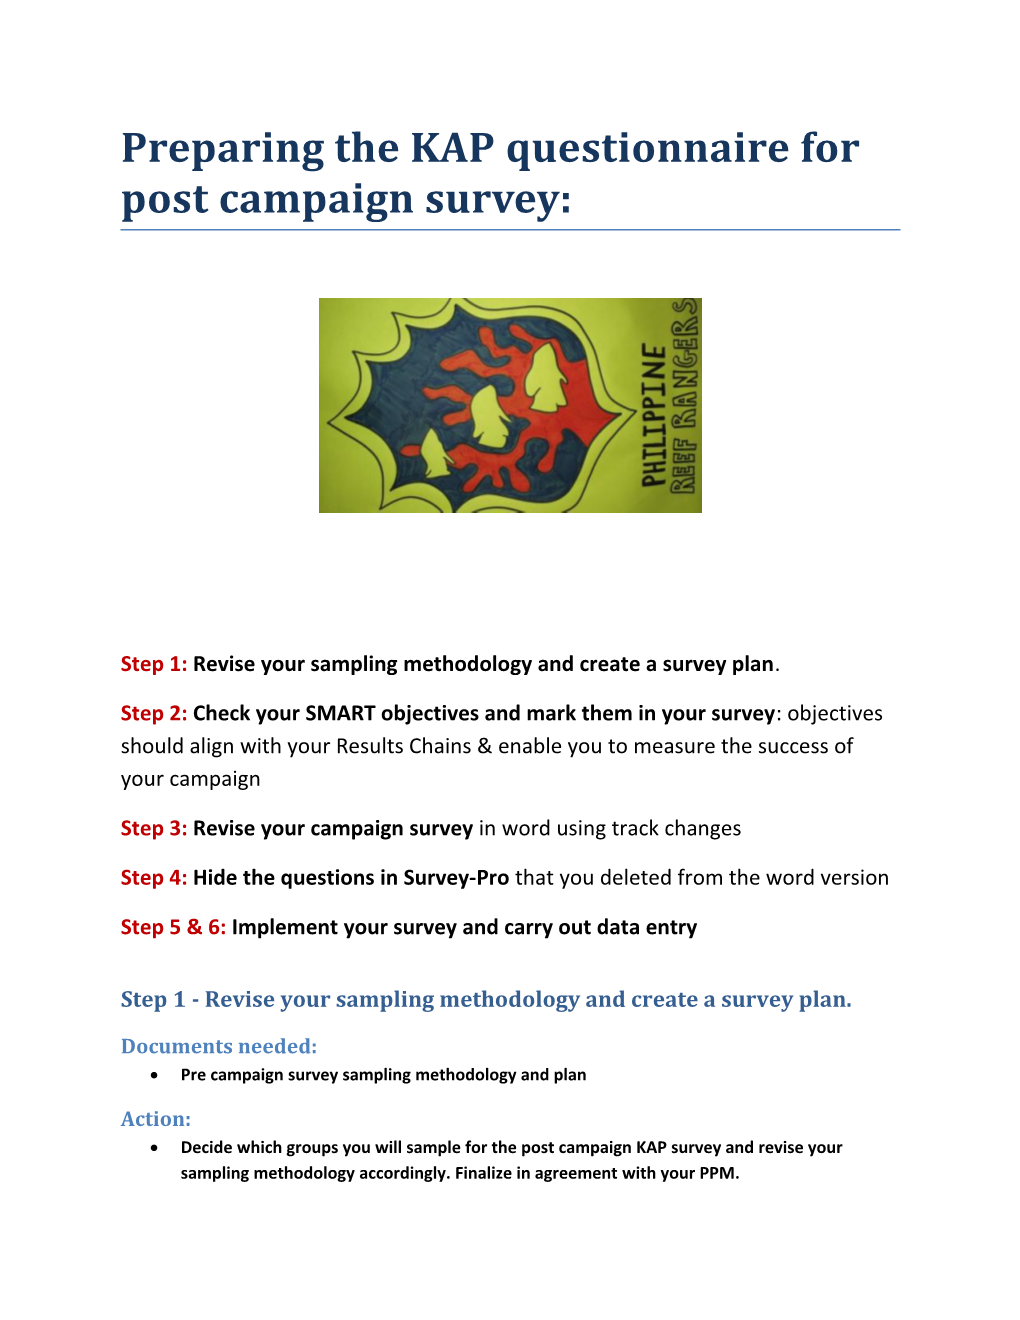 Preparing the KAP Questionnaire for Post Campaign Survey